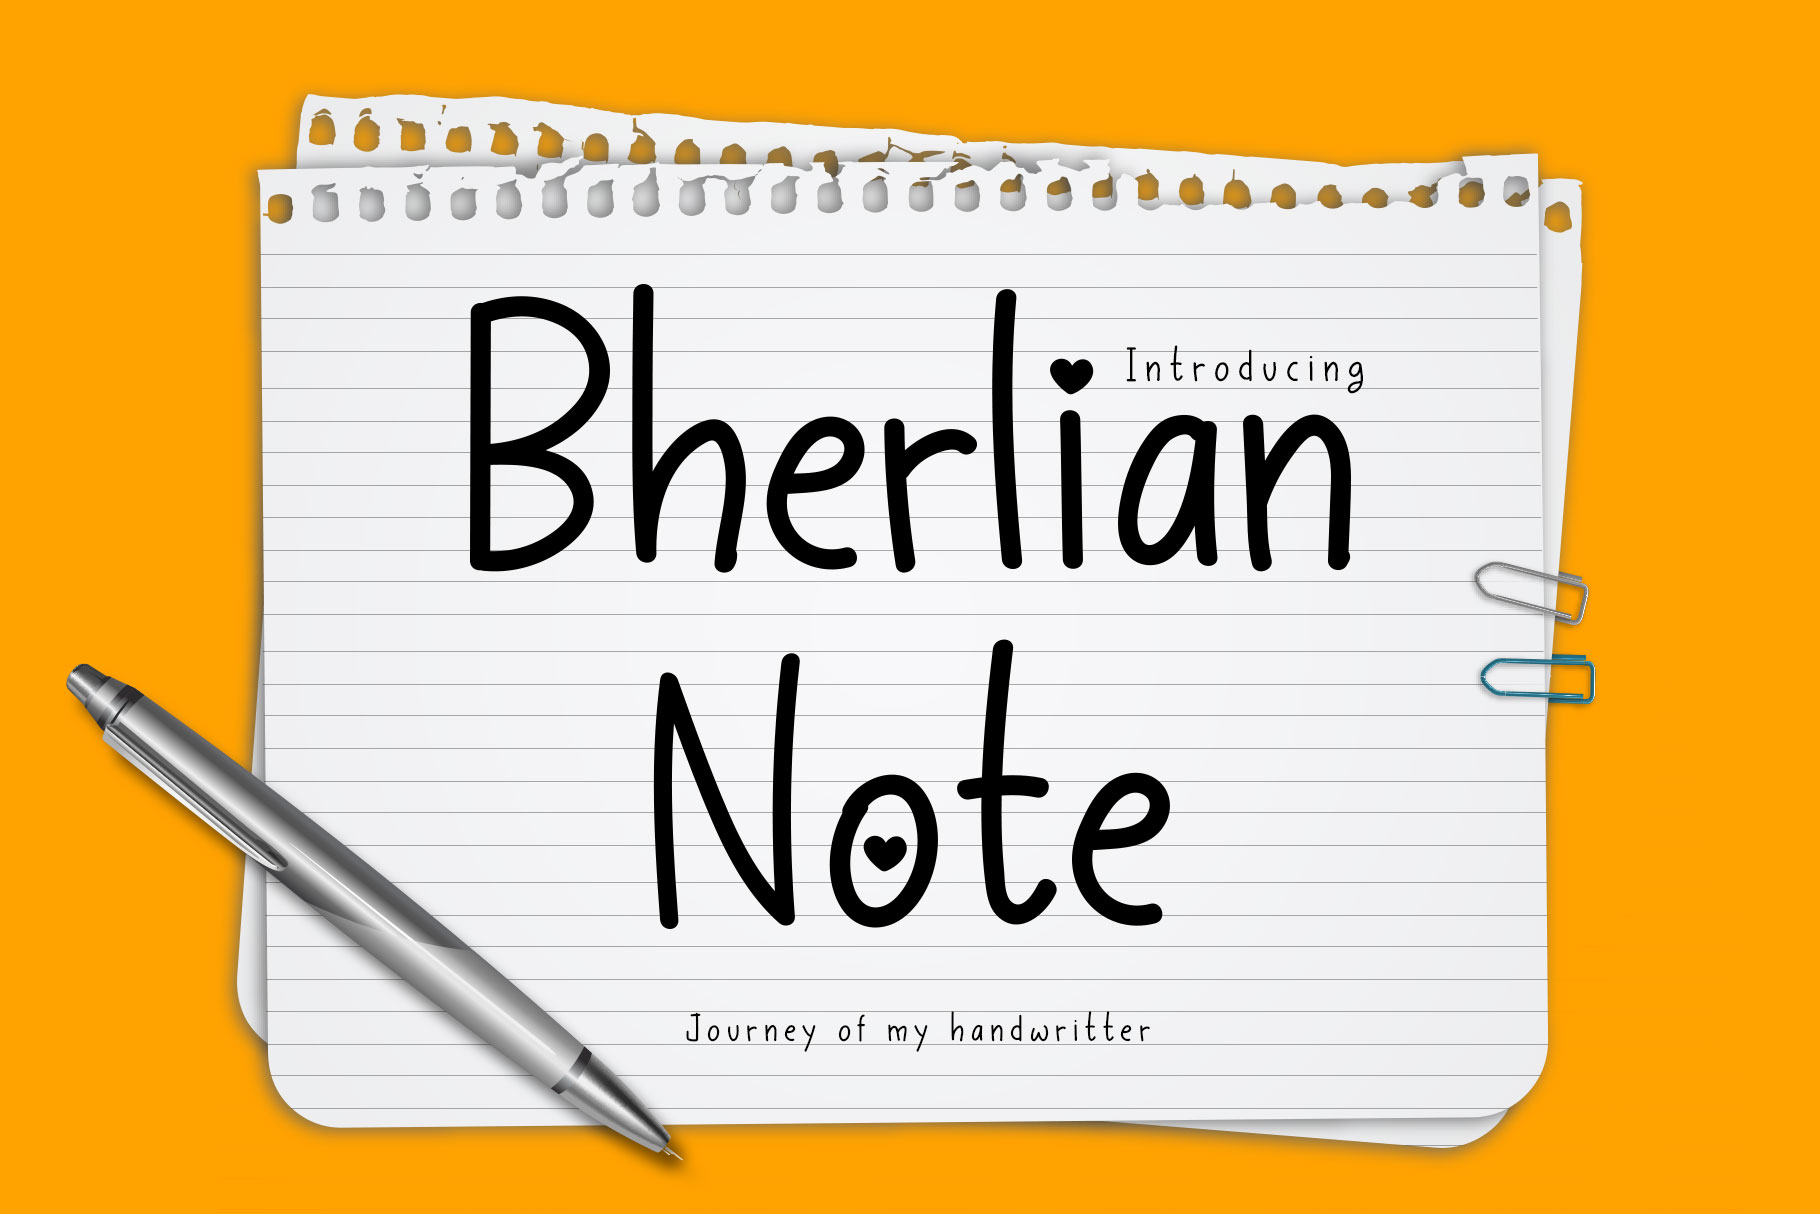 Bherlian Note